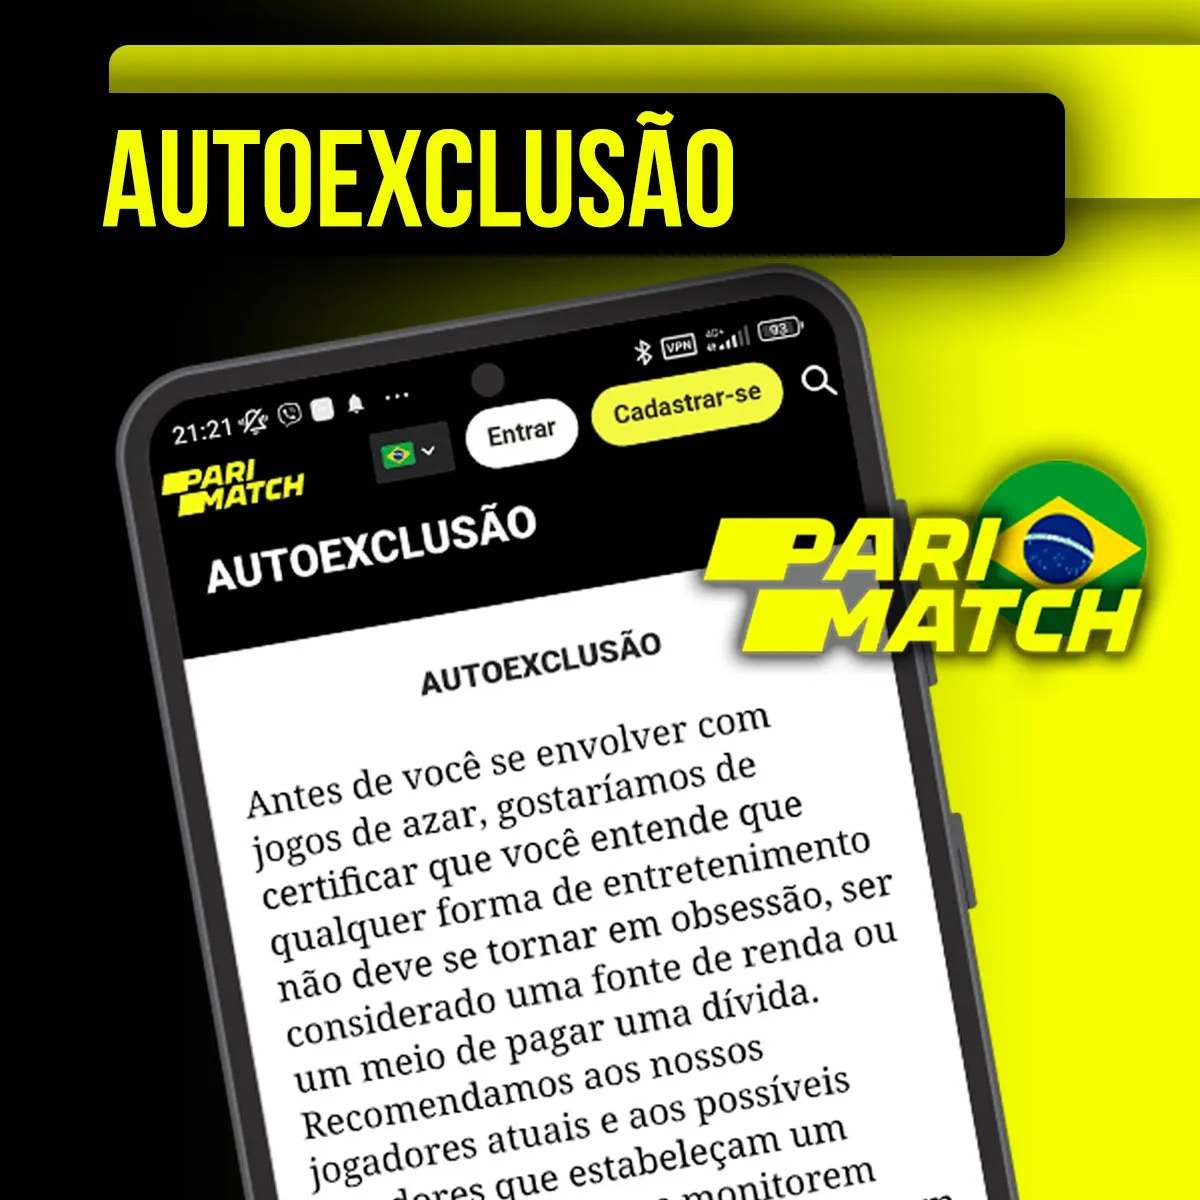 Auto-exclusão da sociedade de apostas Parimatch no Brasil